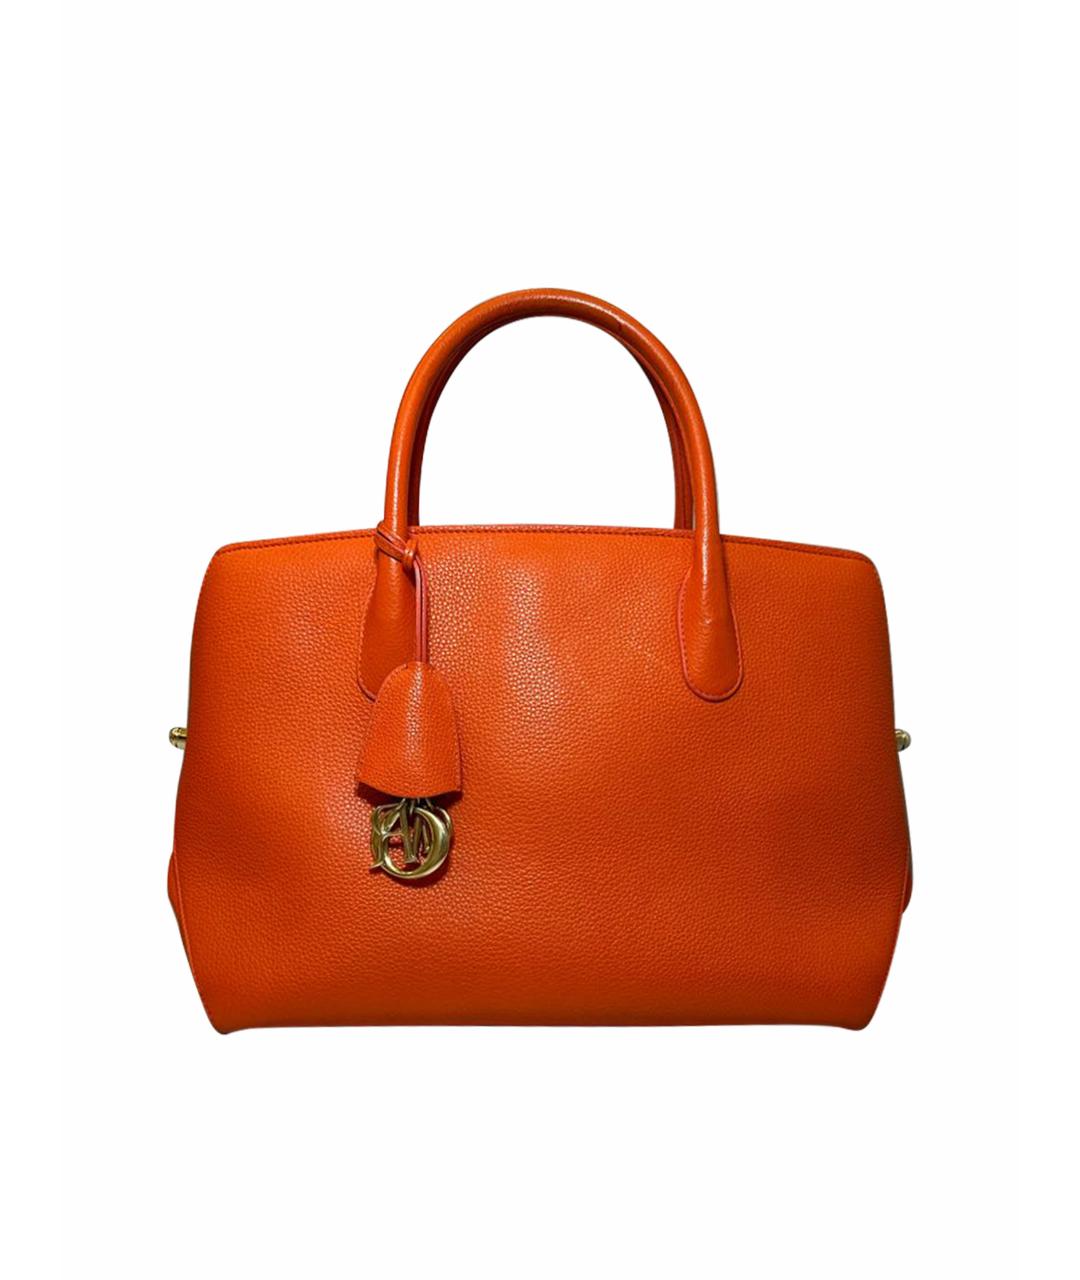 CHRISTIAN DIOR PRE-OWNED Оранжевая кожаная сумка с короткими ручками, фото 1